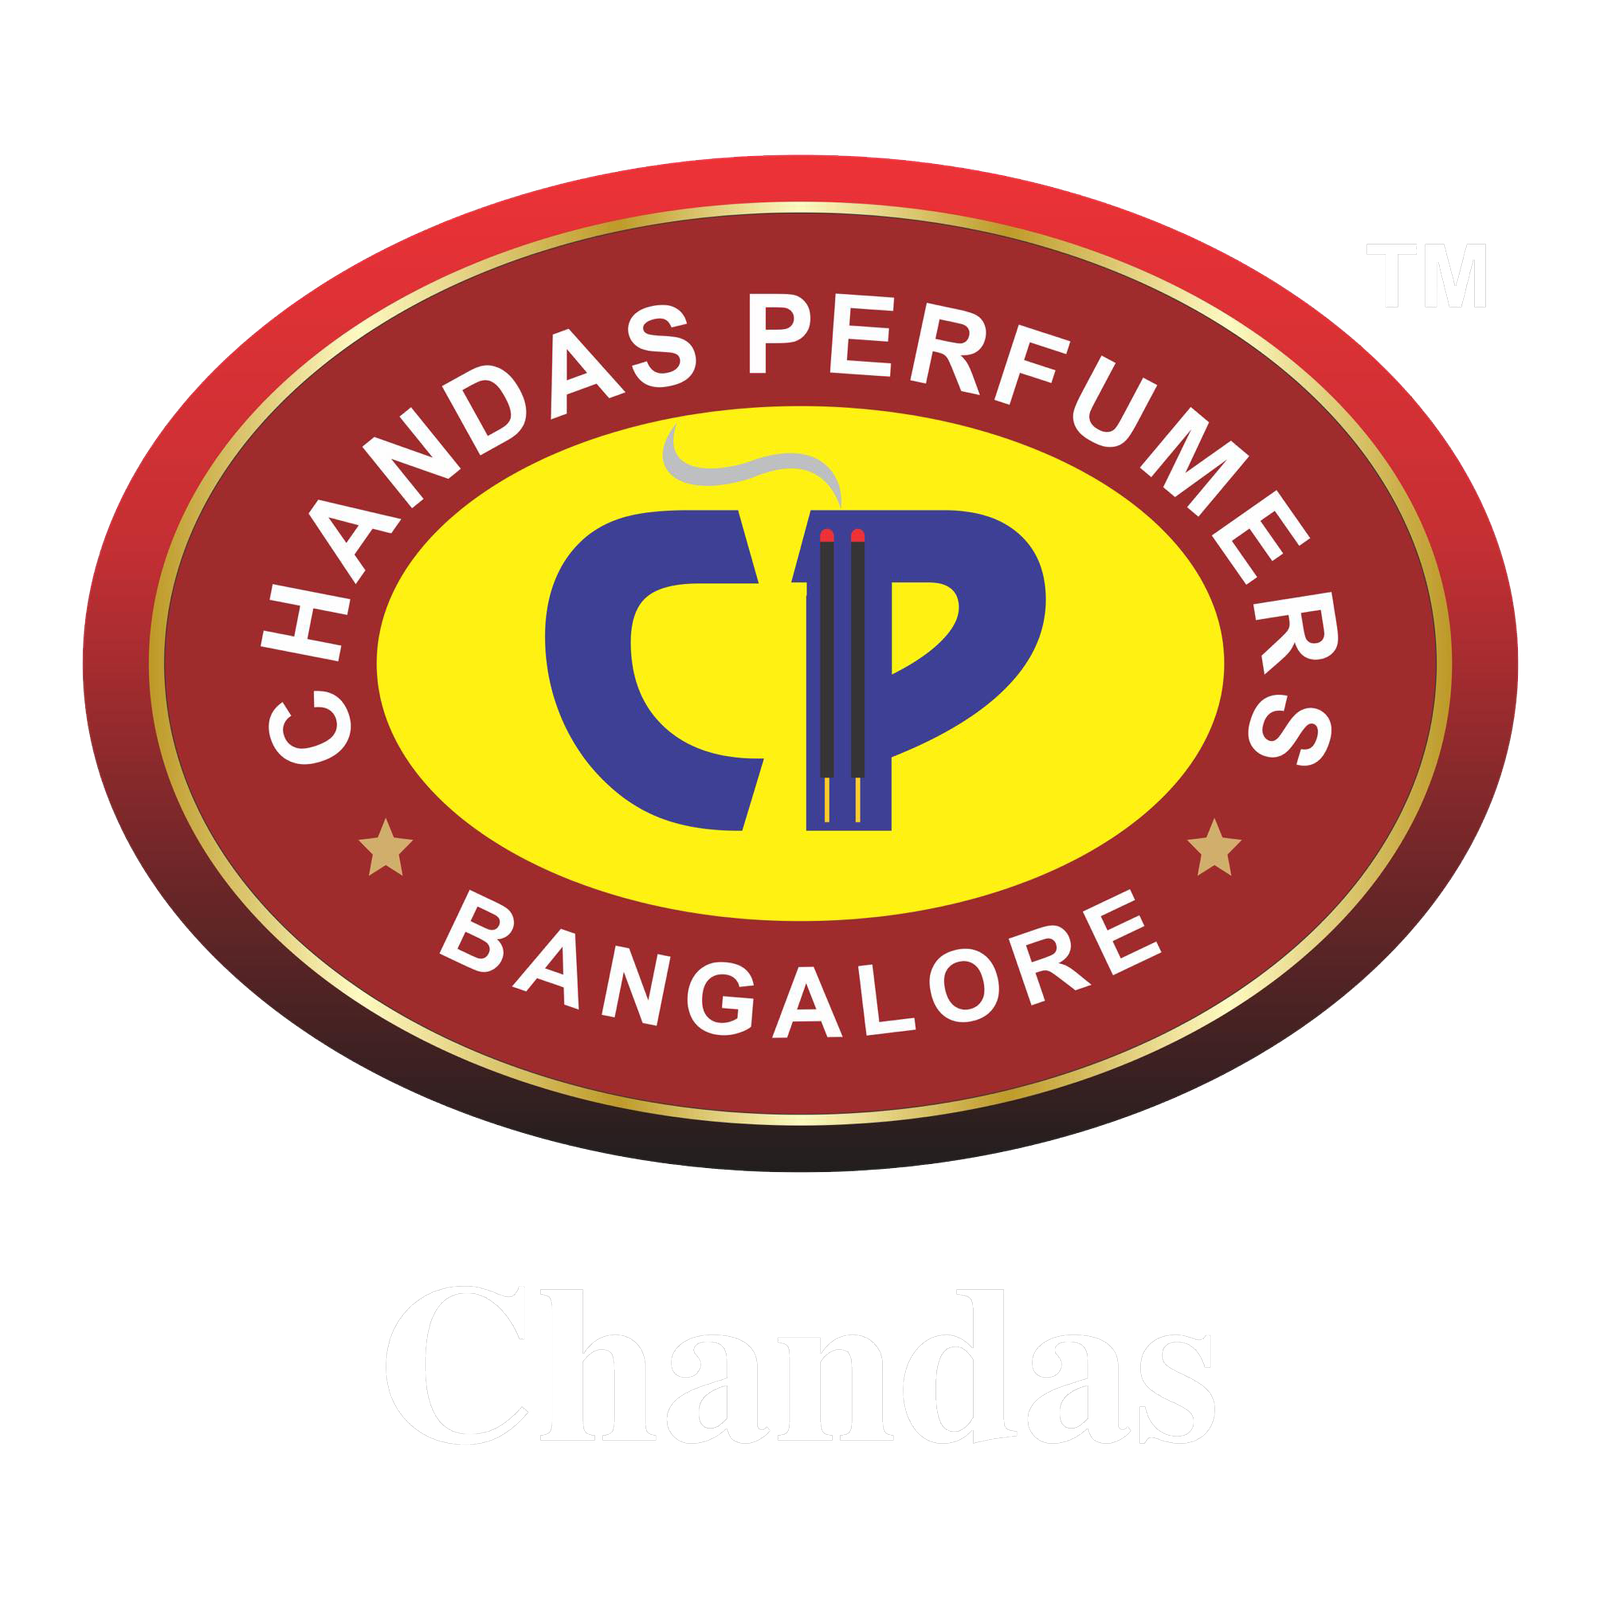 Chandas Perfumers